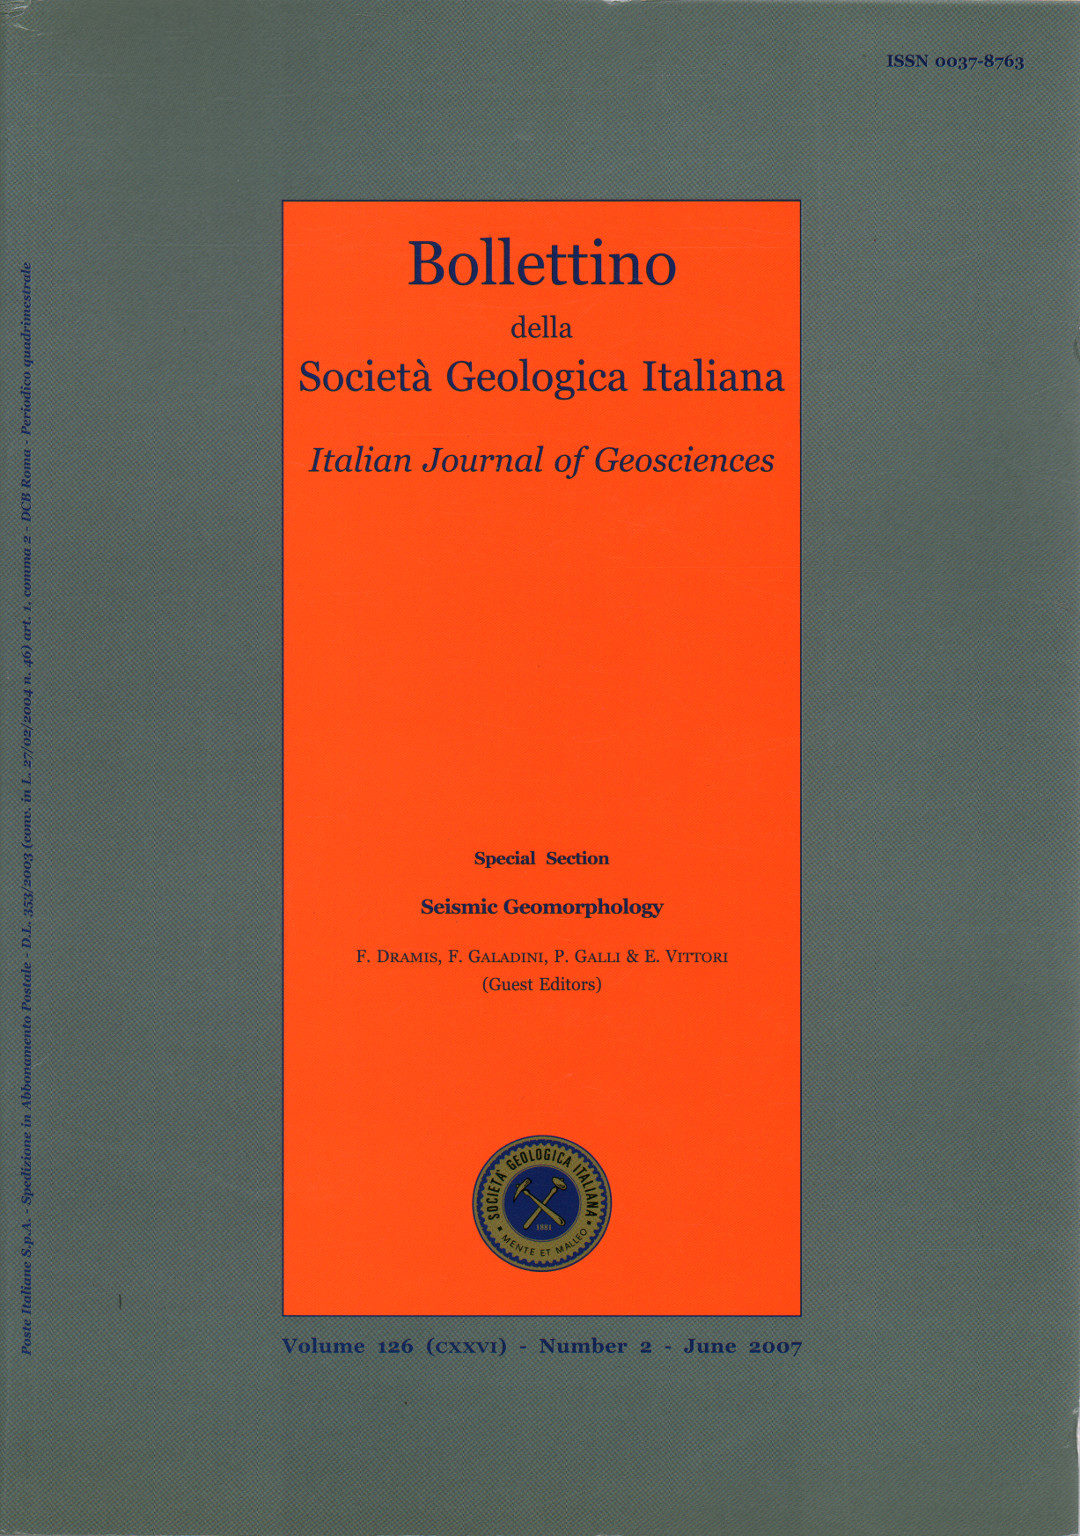 Bollettino della Società Geologica Italiana-Itali, s.a.